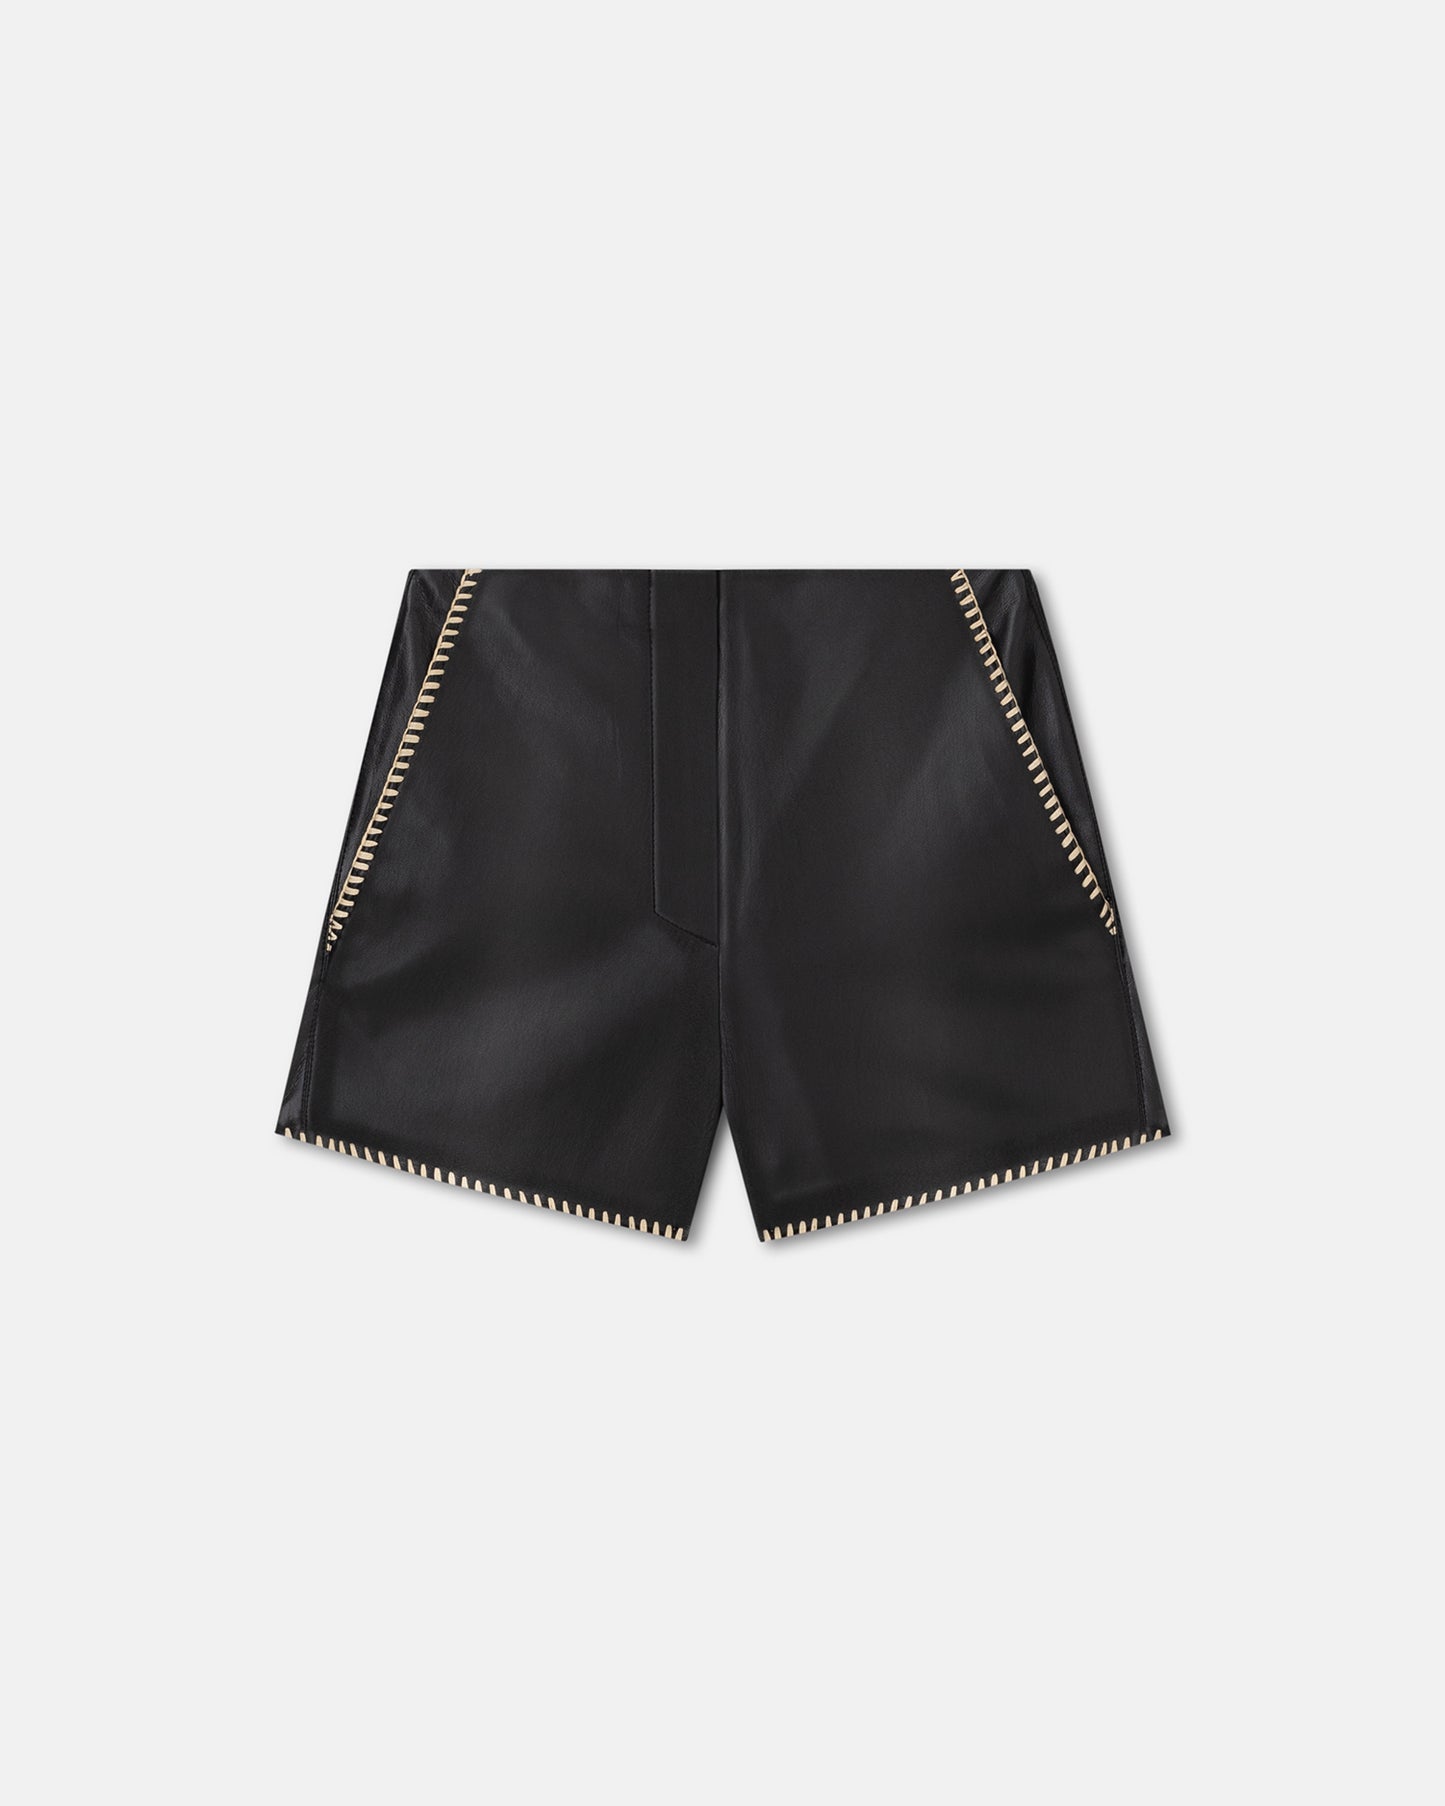 Elza - Okobor™ Alt-Leather Shorts - Black